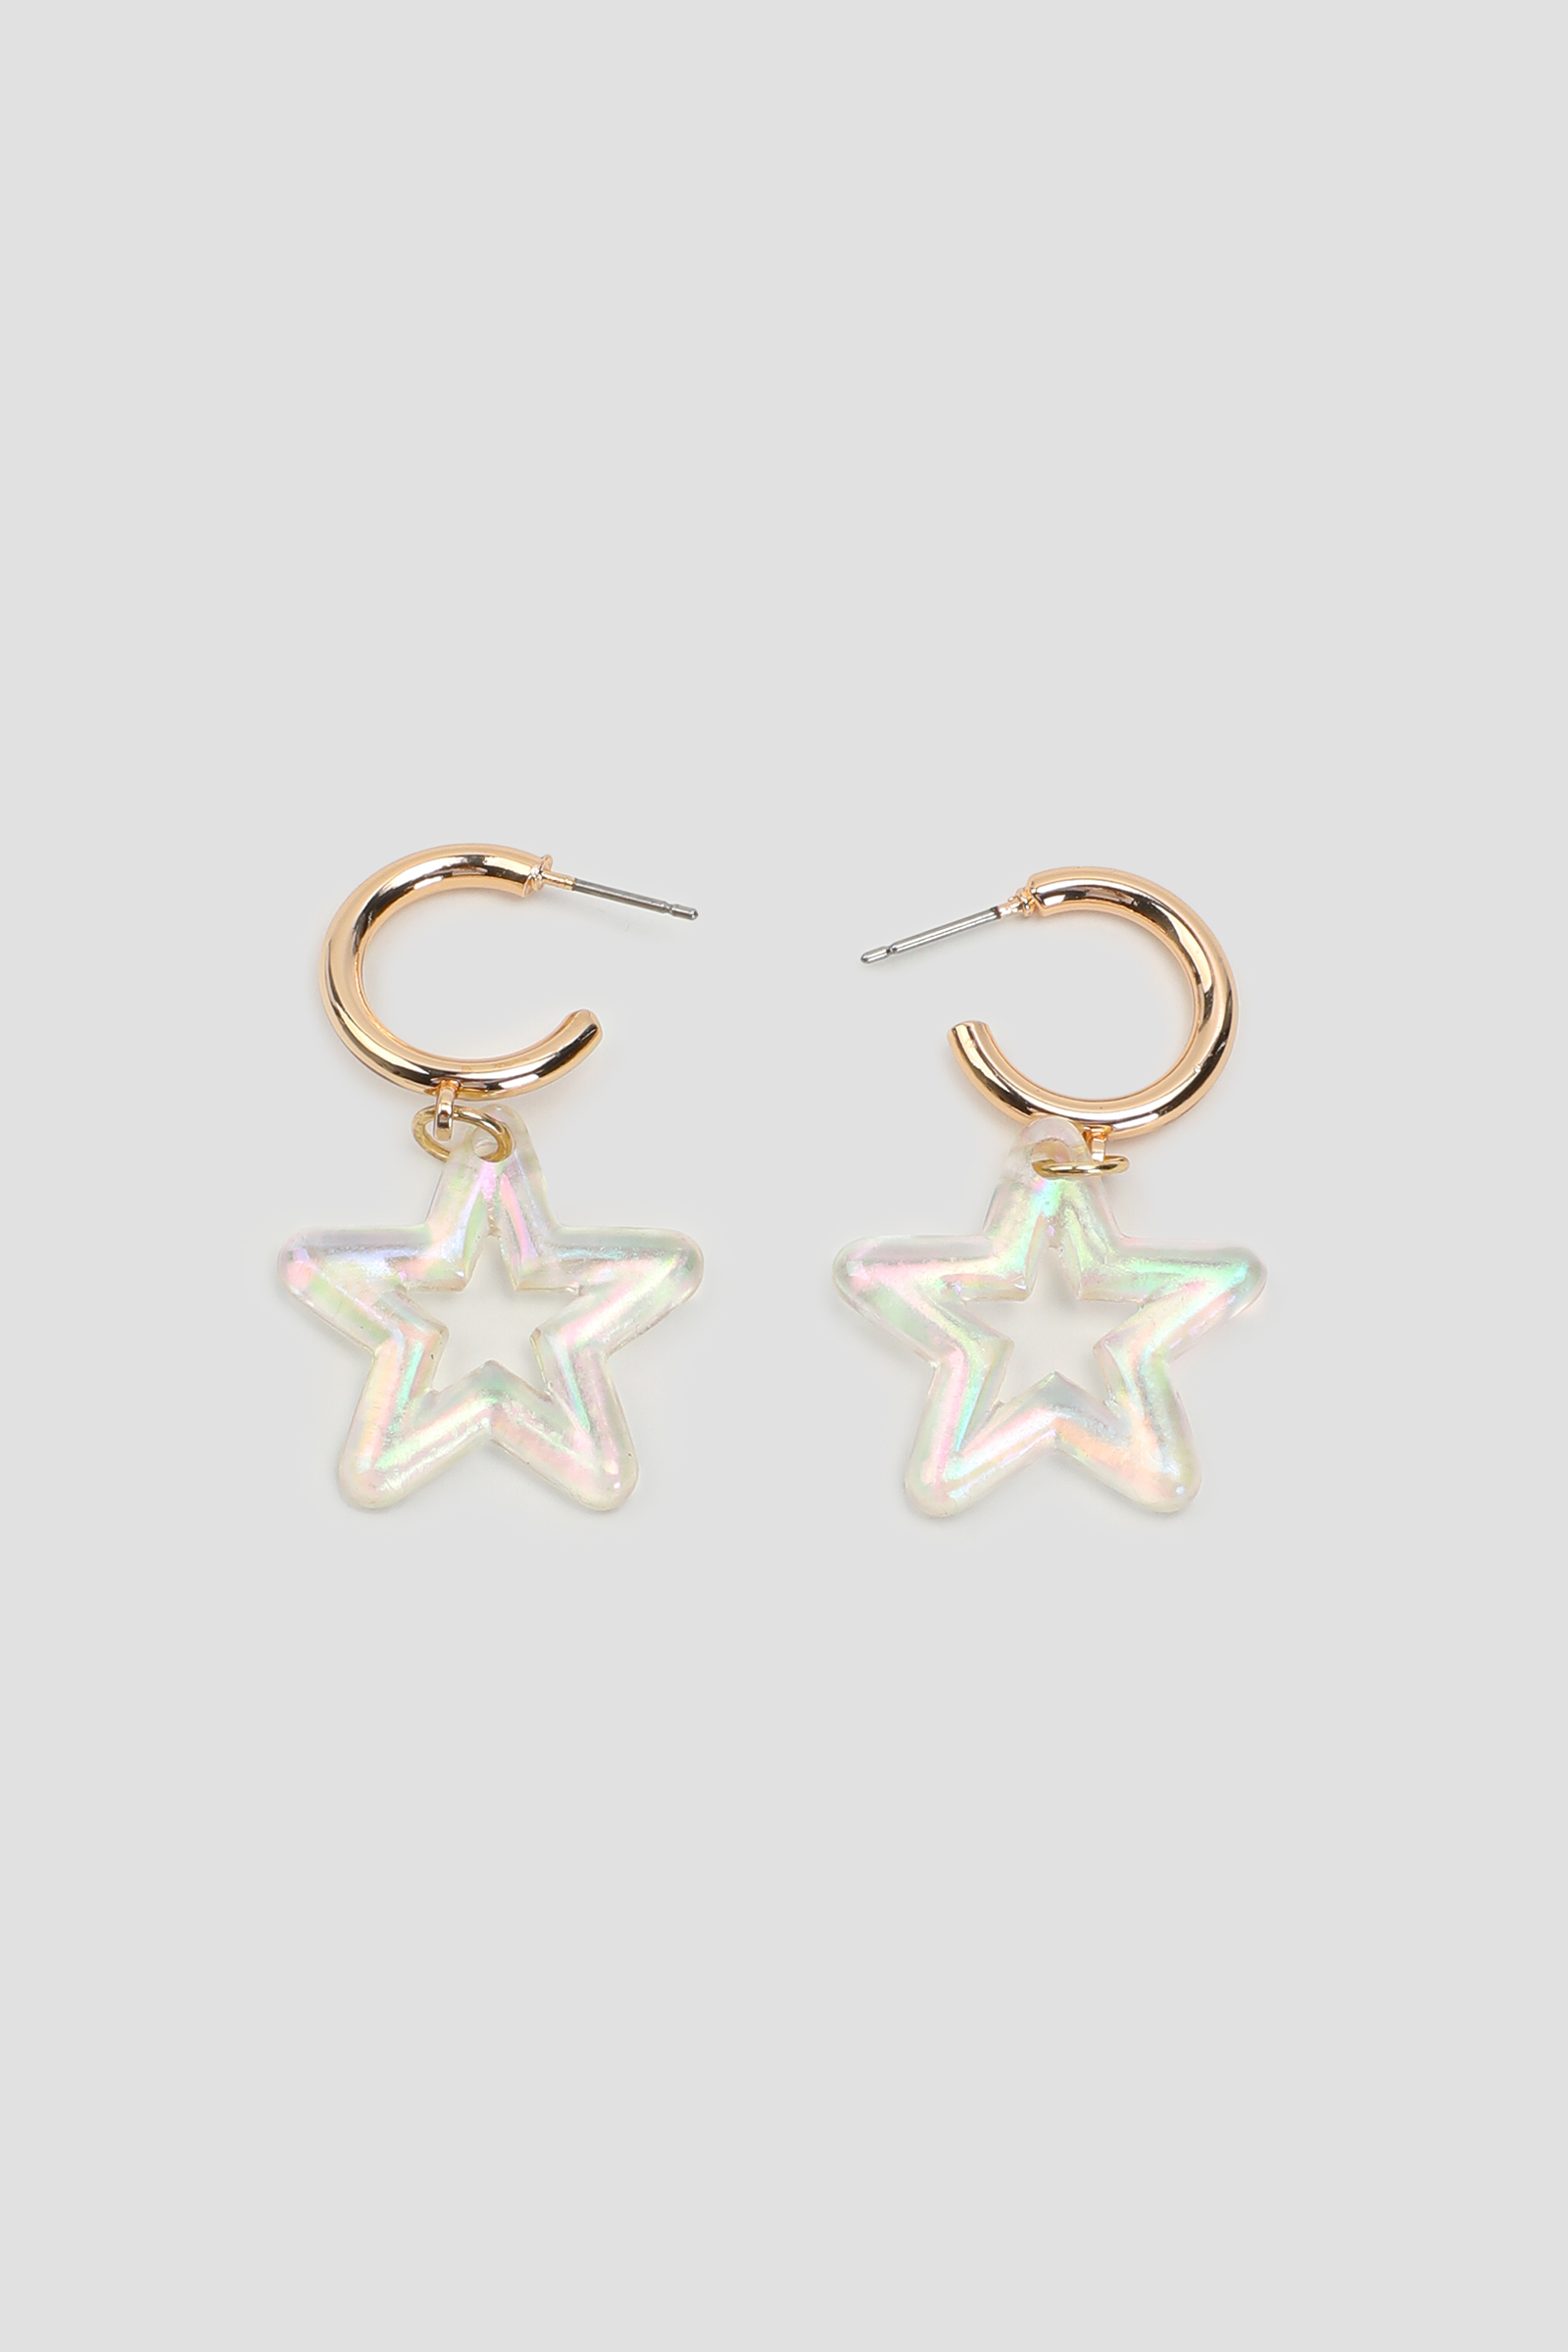 Ardene Iridescent Star Hoop Earrings in Gold | Stainless Steel